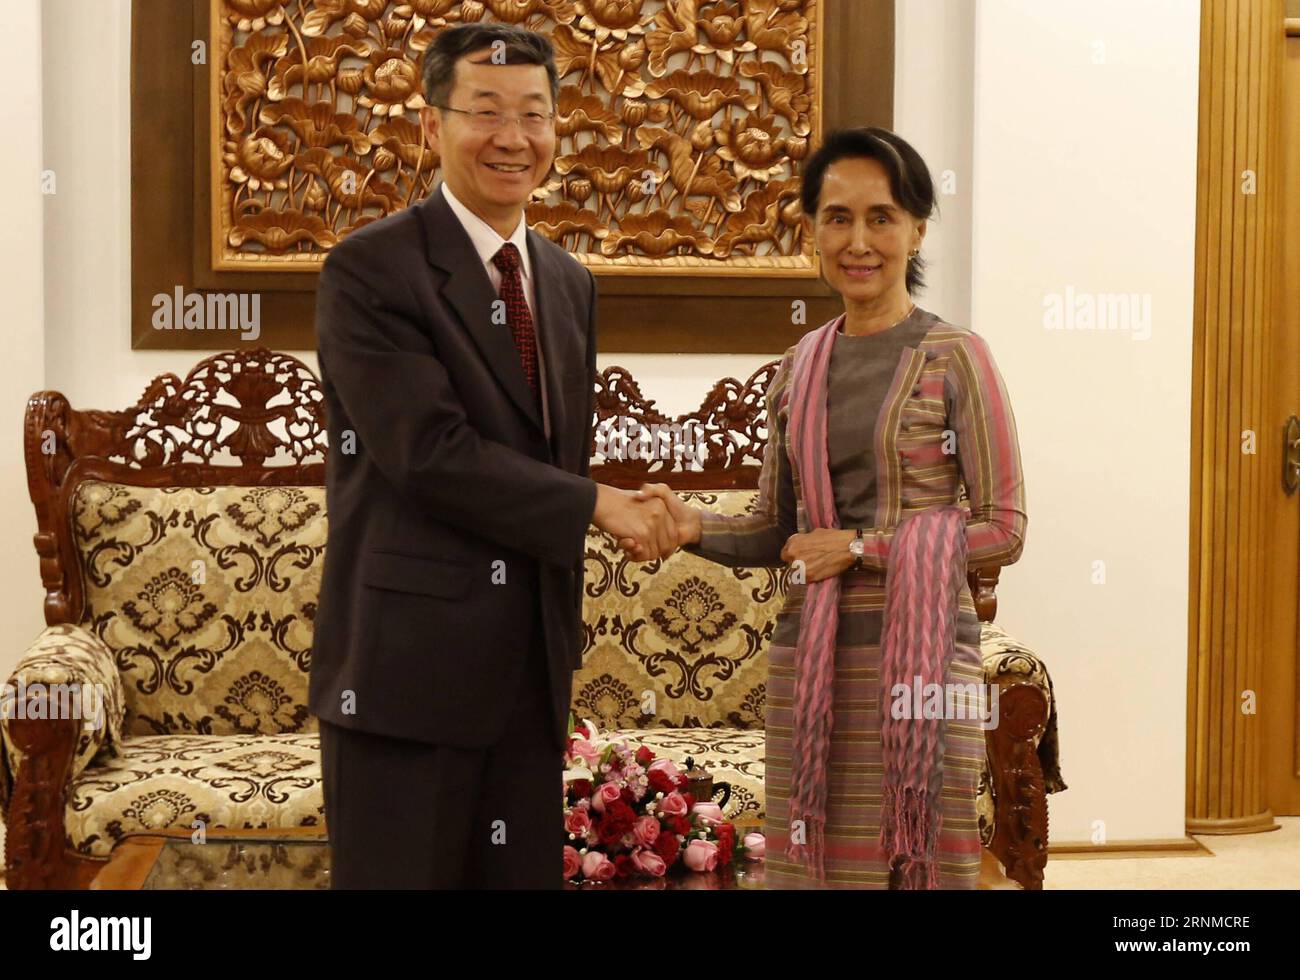 (170522) -- NAY PYI TAW, 22. Mai 2017 -- Myanmar State Counselor Aung San Suu Kyi (R) trifft am 22. Mai 2017 in Nay Pyi Taw, Myanmar, mit dem Sonderbeauftragten für asiatische Angelegenheiten des chinesischen Außenministeriums Sun Guoxiang zusammen. U Aung) (dtf) MYANMAR-NAY PYI TAW-CHINA-TREFFEN yangon PUBLICATIONxNOTxINxCHN Nay Pyi Taw 22. Mai 2017 Myanmar Staatsrätin Aung San Suu Kyi r trifft AM 22. Mai 2017 in Nay Pyi Taw Myanmar mit dem Sonderbeauftragten für asiatische Angelegenheiten des chinesischen Außenministeriums Sun Guoxiang zusammen China trifft Yangon PUBLICATIONxNOTxINxCHN Stockfoto